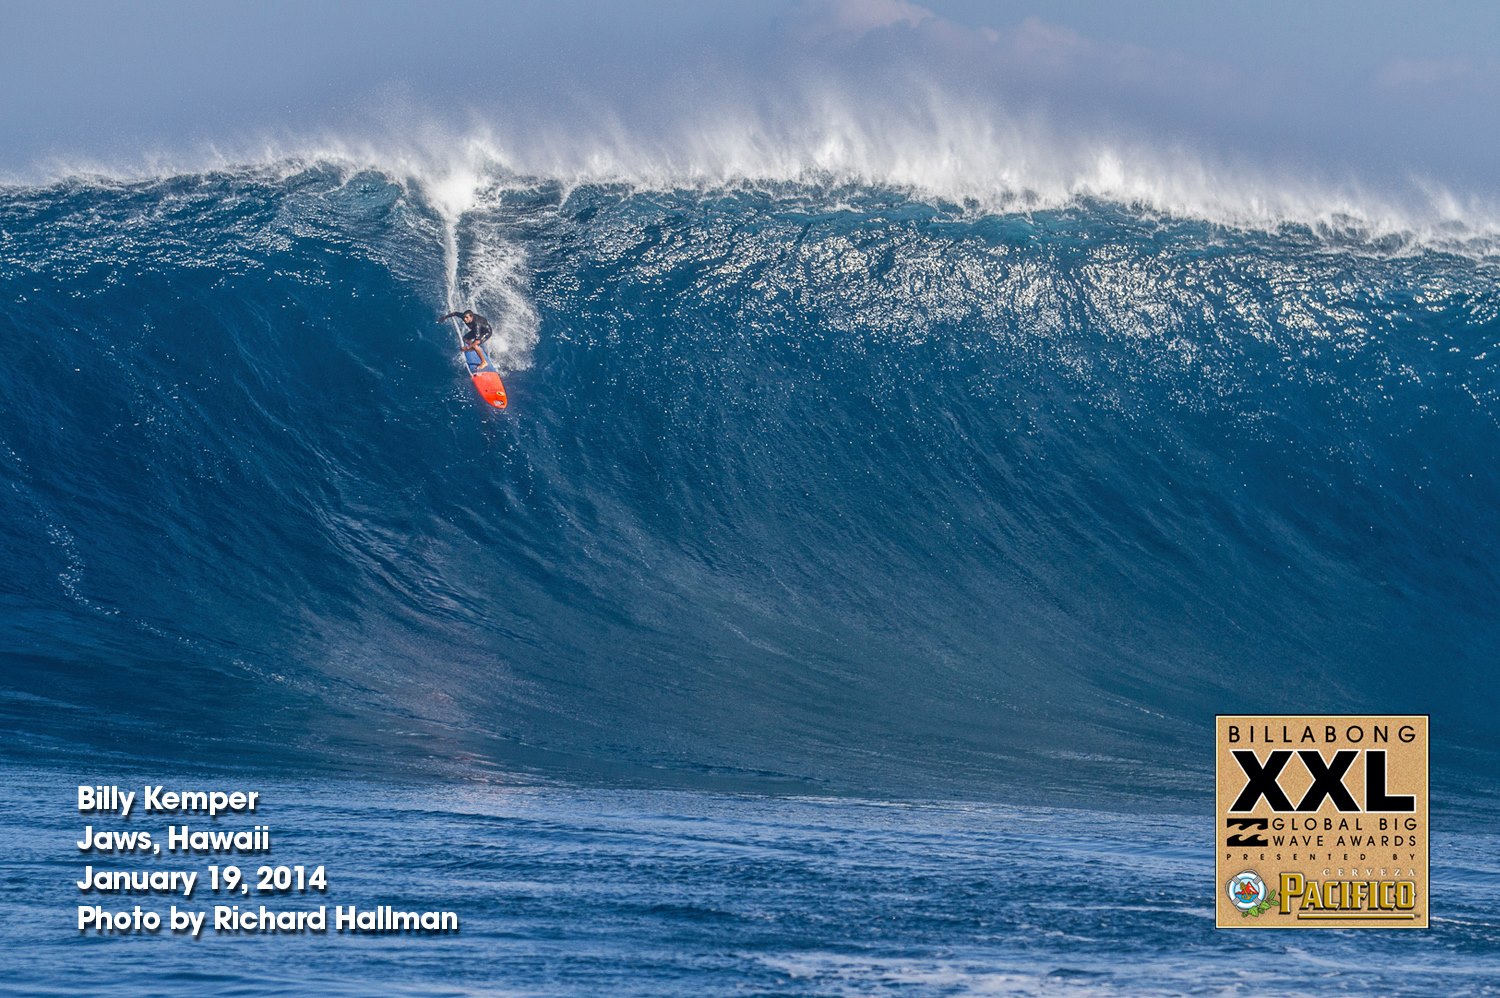 Surf de gros : la houle de la décennie attendue à Hawaii ce mercredi